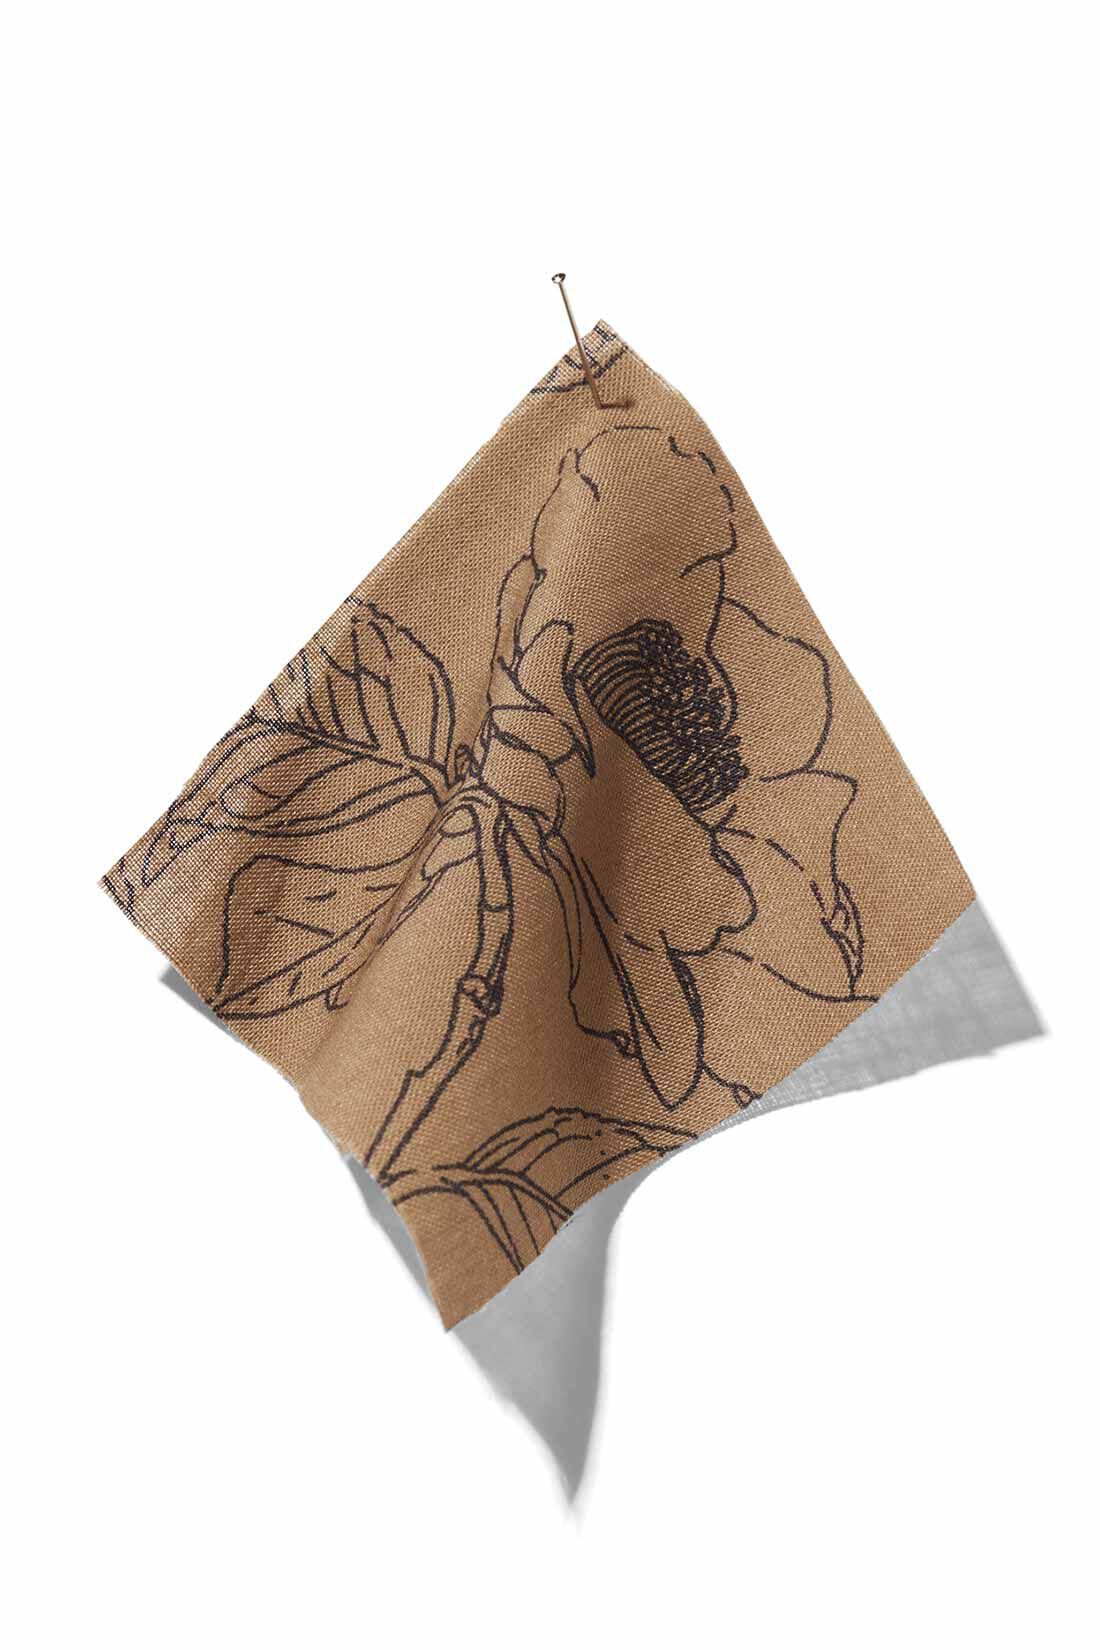 IEDIT|牧野植物園×IEDIT[イディット]　ヤブツバキの総柄スカート〈カーキブラウン〉|薄く、軽やかな綿100％の布はく素材を使用。線は原画に近い墨色に、アーシーなカーキブラウンを配色。